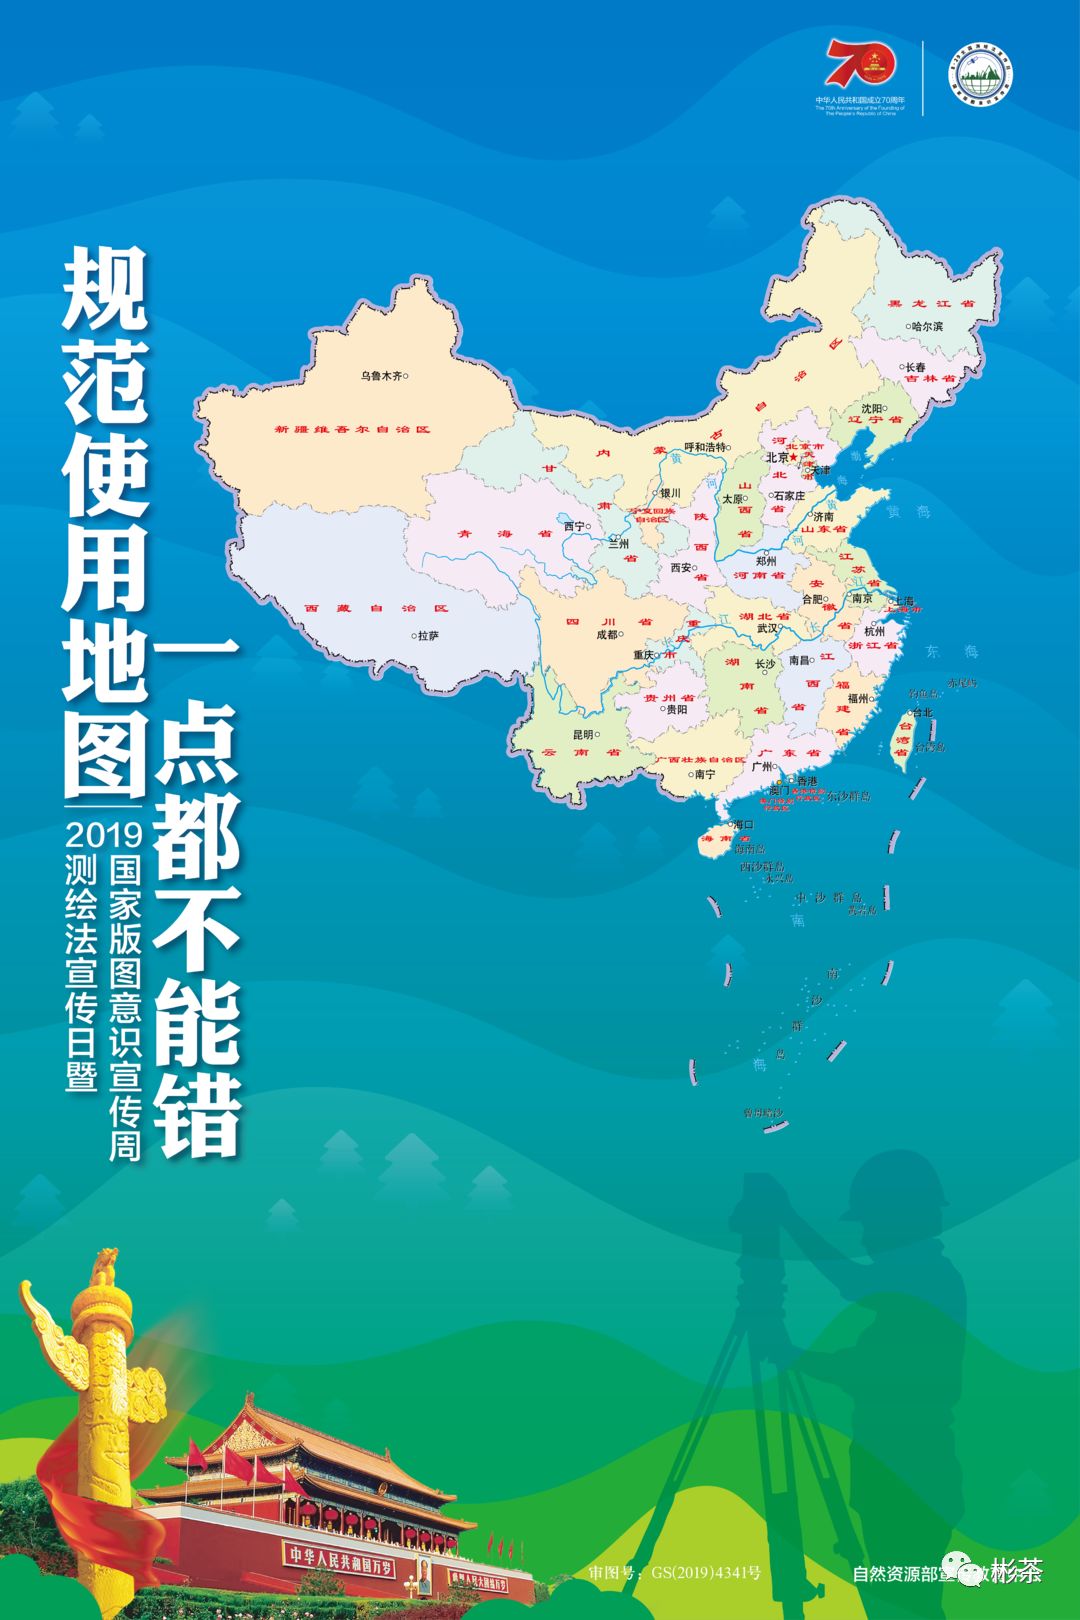 【会·提醒】中国新版标准地图上线!规范使用,一点都不能错